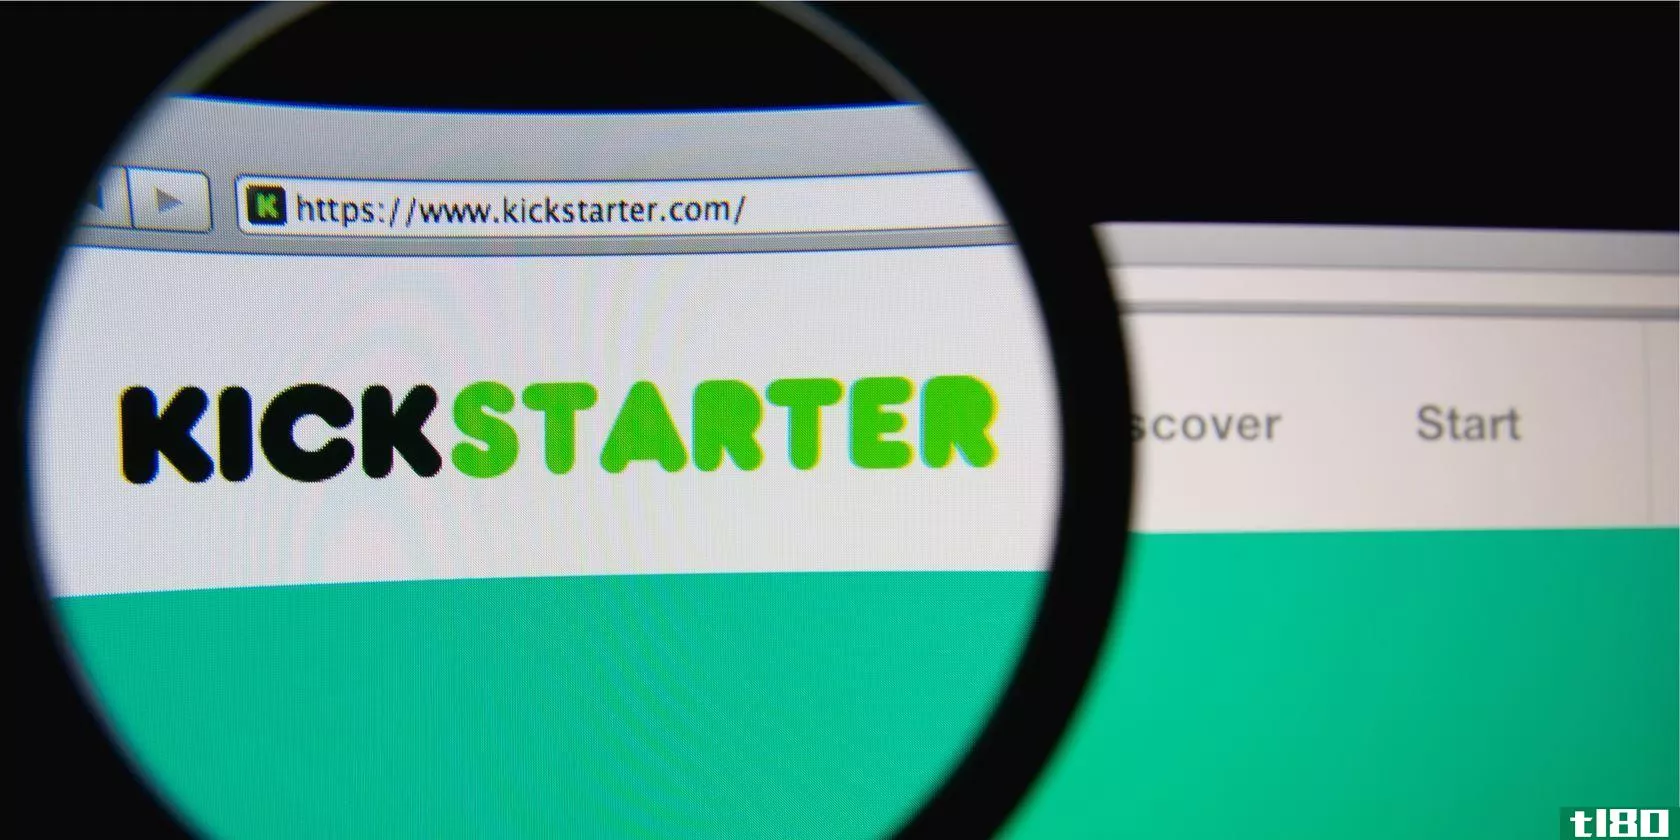 kickstarter-success-projection-featured